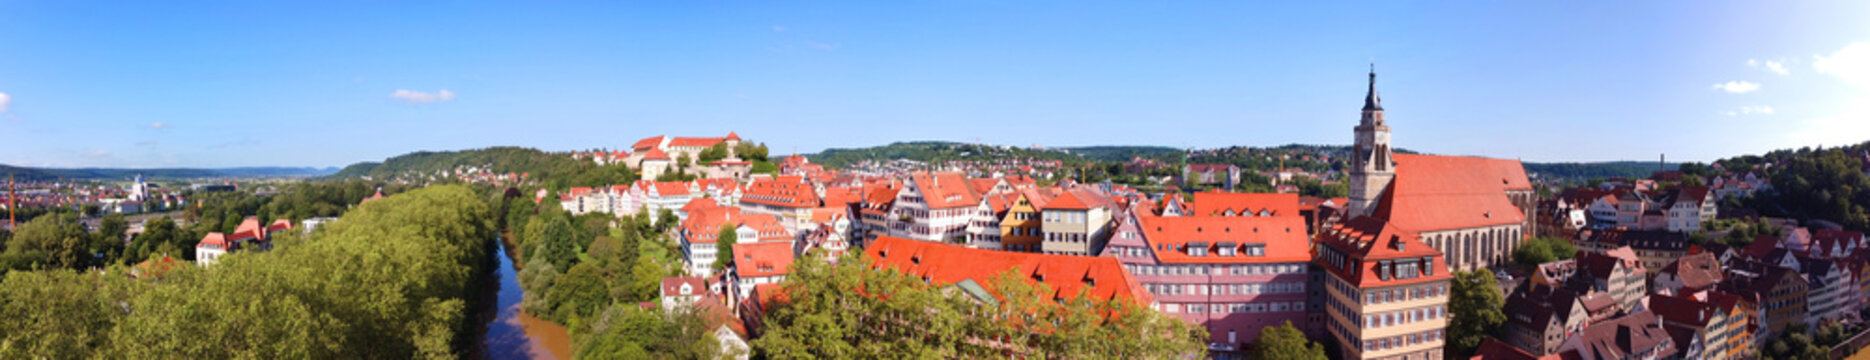 Tübingen, Deutschland: Panorama über die Stadt